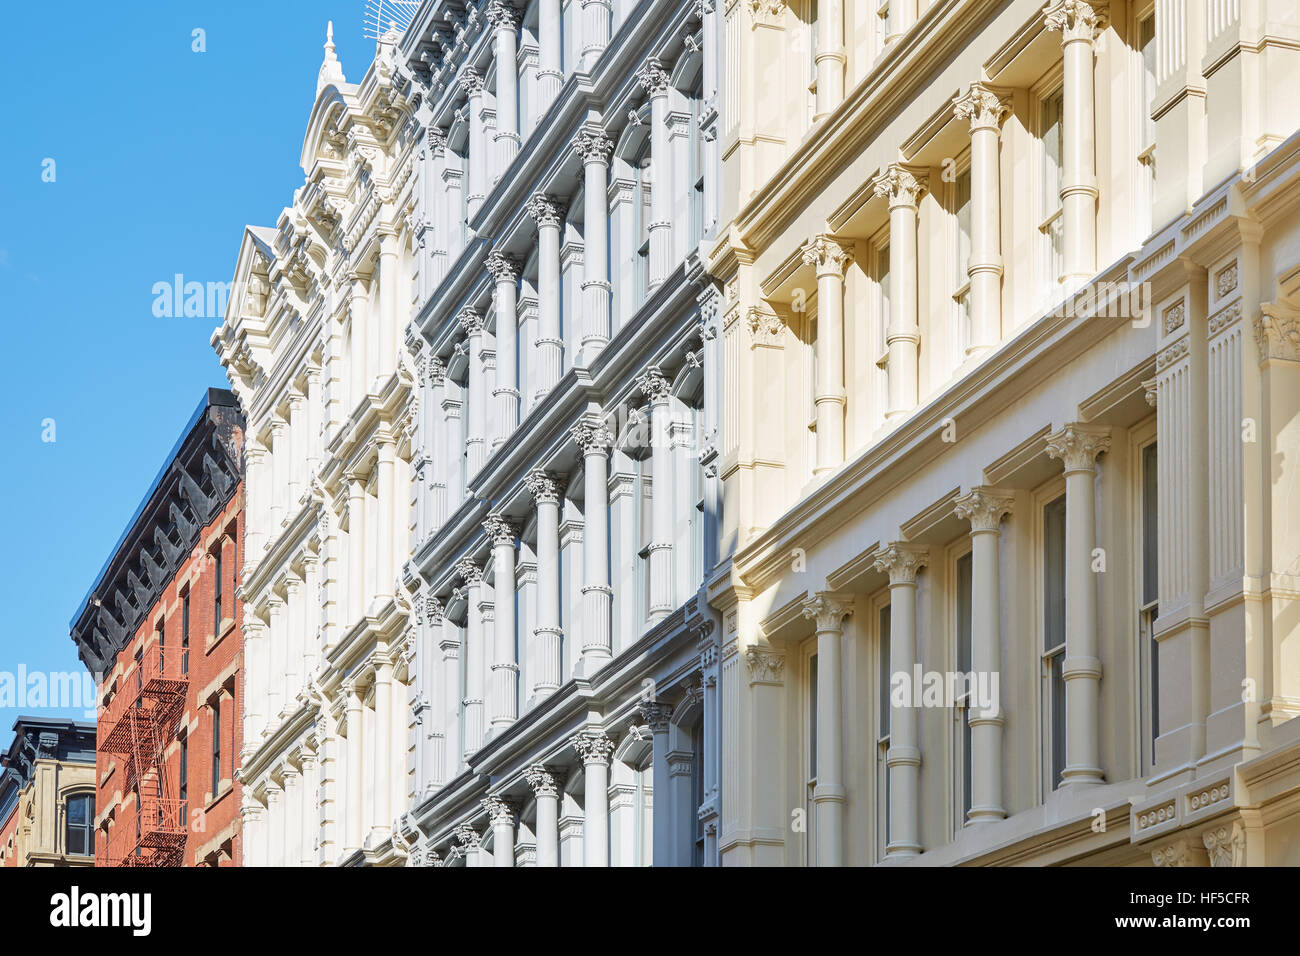 Façades de maisons anciennes à New York, journée ensoleillée et ciel bleu à Soho Banque D'Images